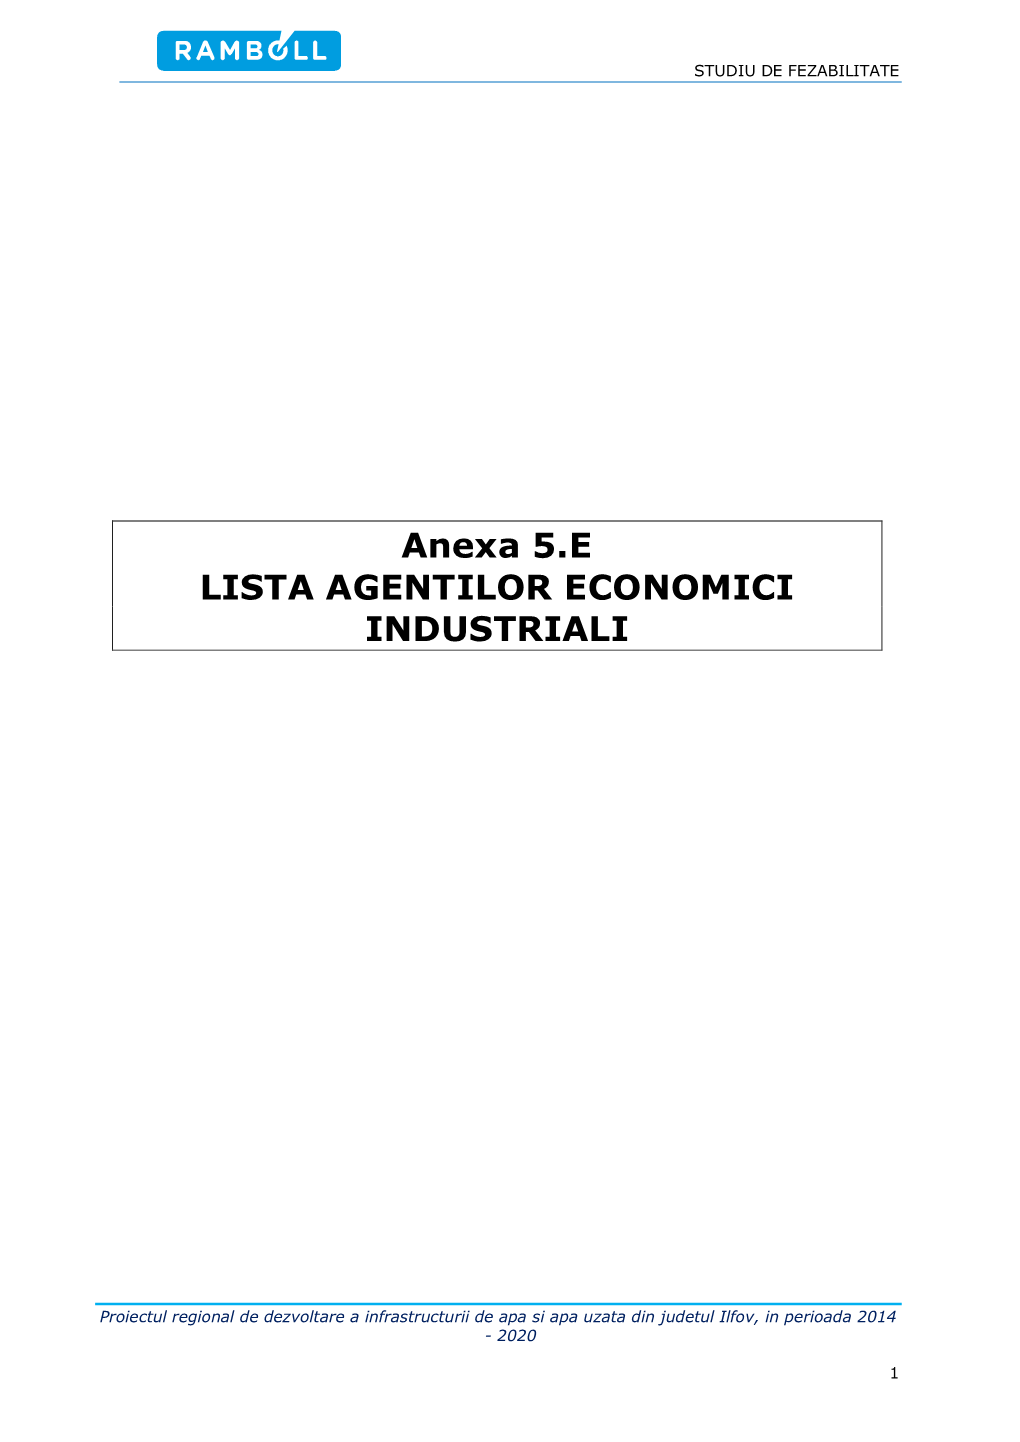 Anexa 5.E LISTA AGENTILOR ECONOMICI INDUSTRIALI